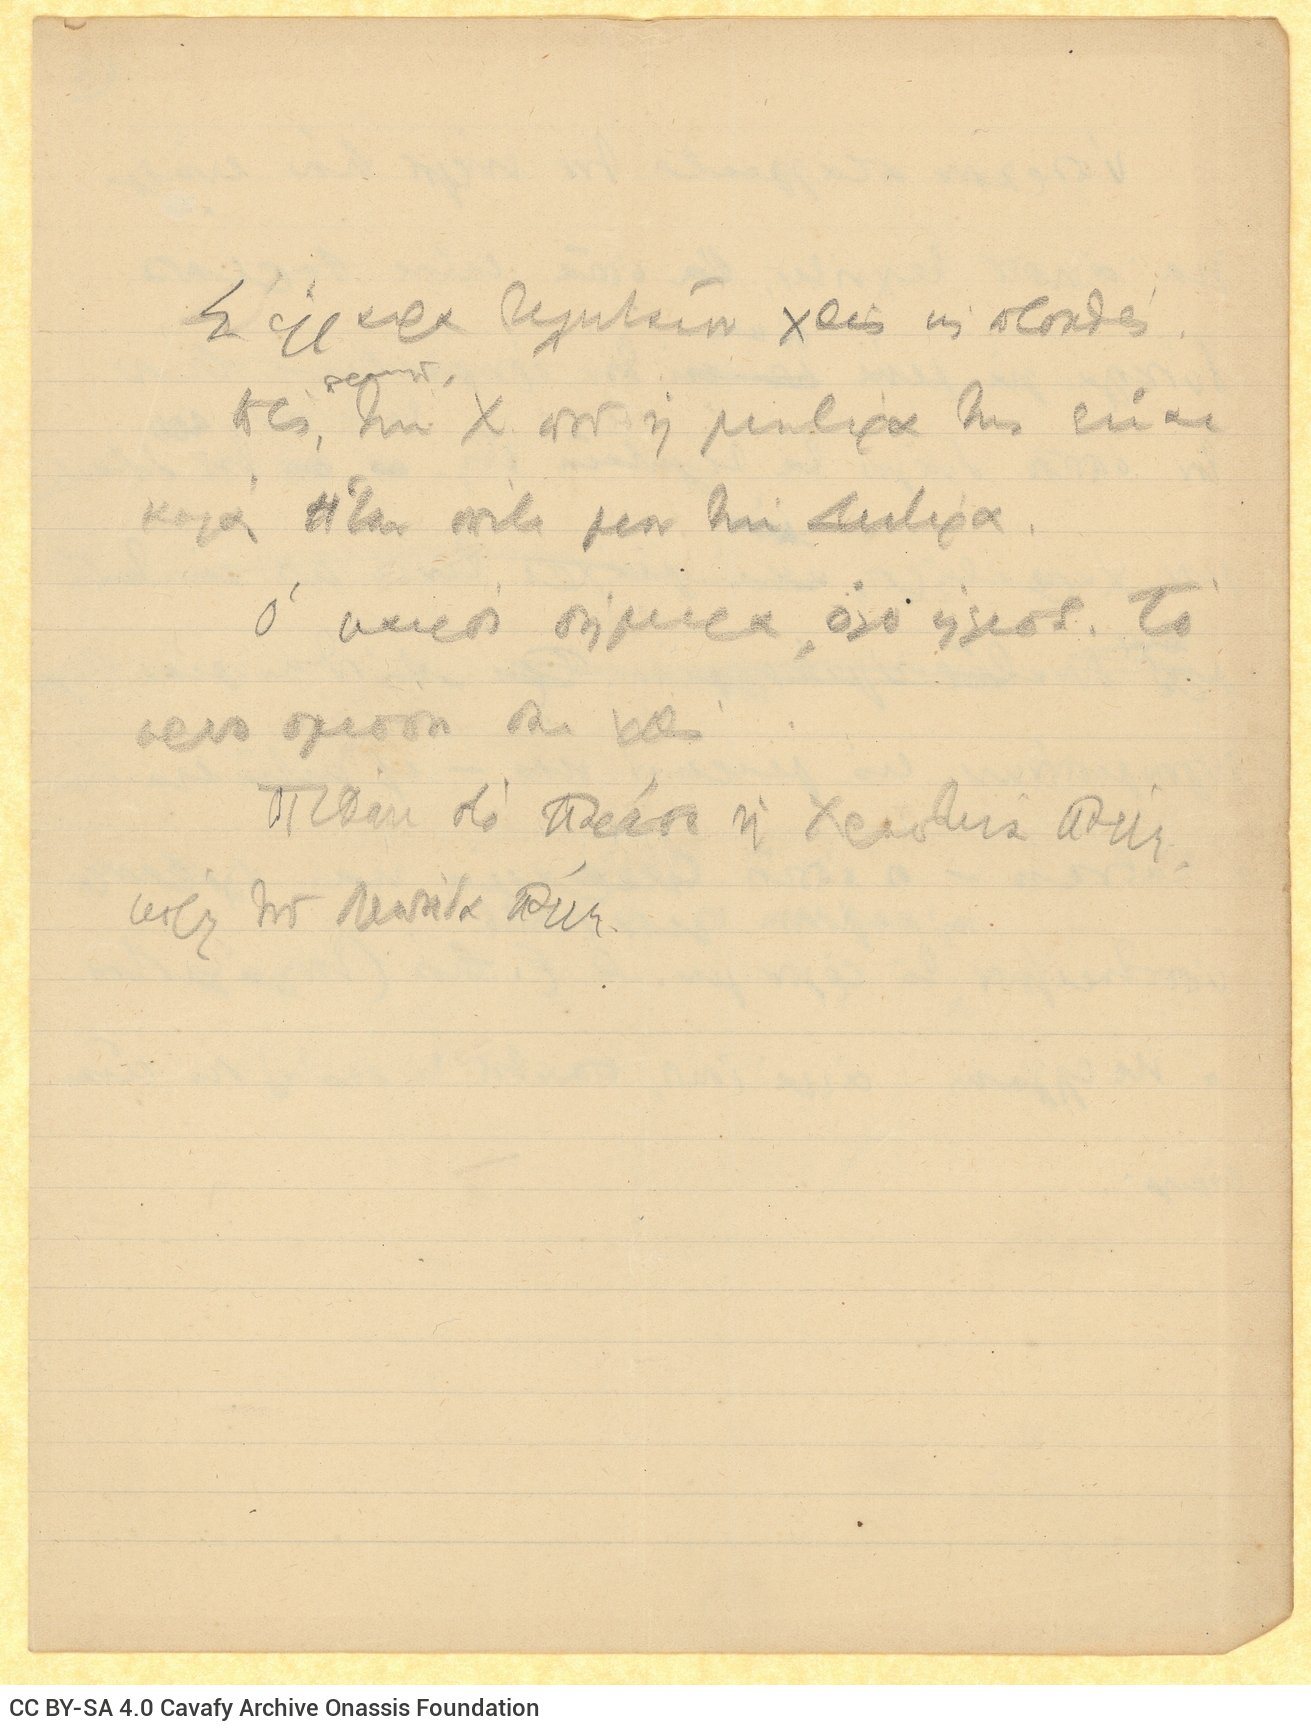 Χειρόγραφο σχέδιο επιστολής του Καβάφη, πιθανότατα προς τον αδερφό �